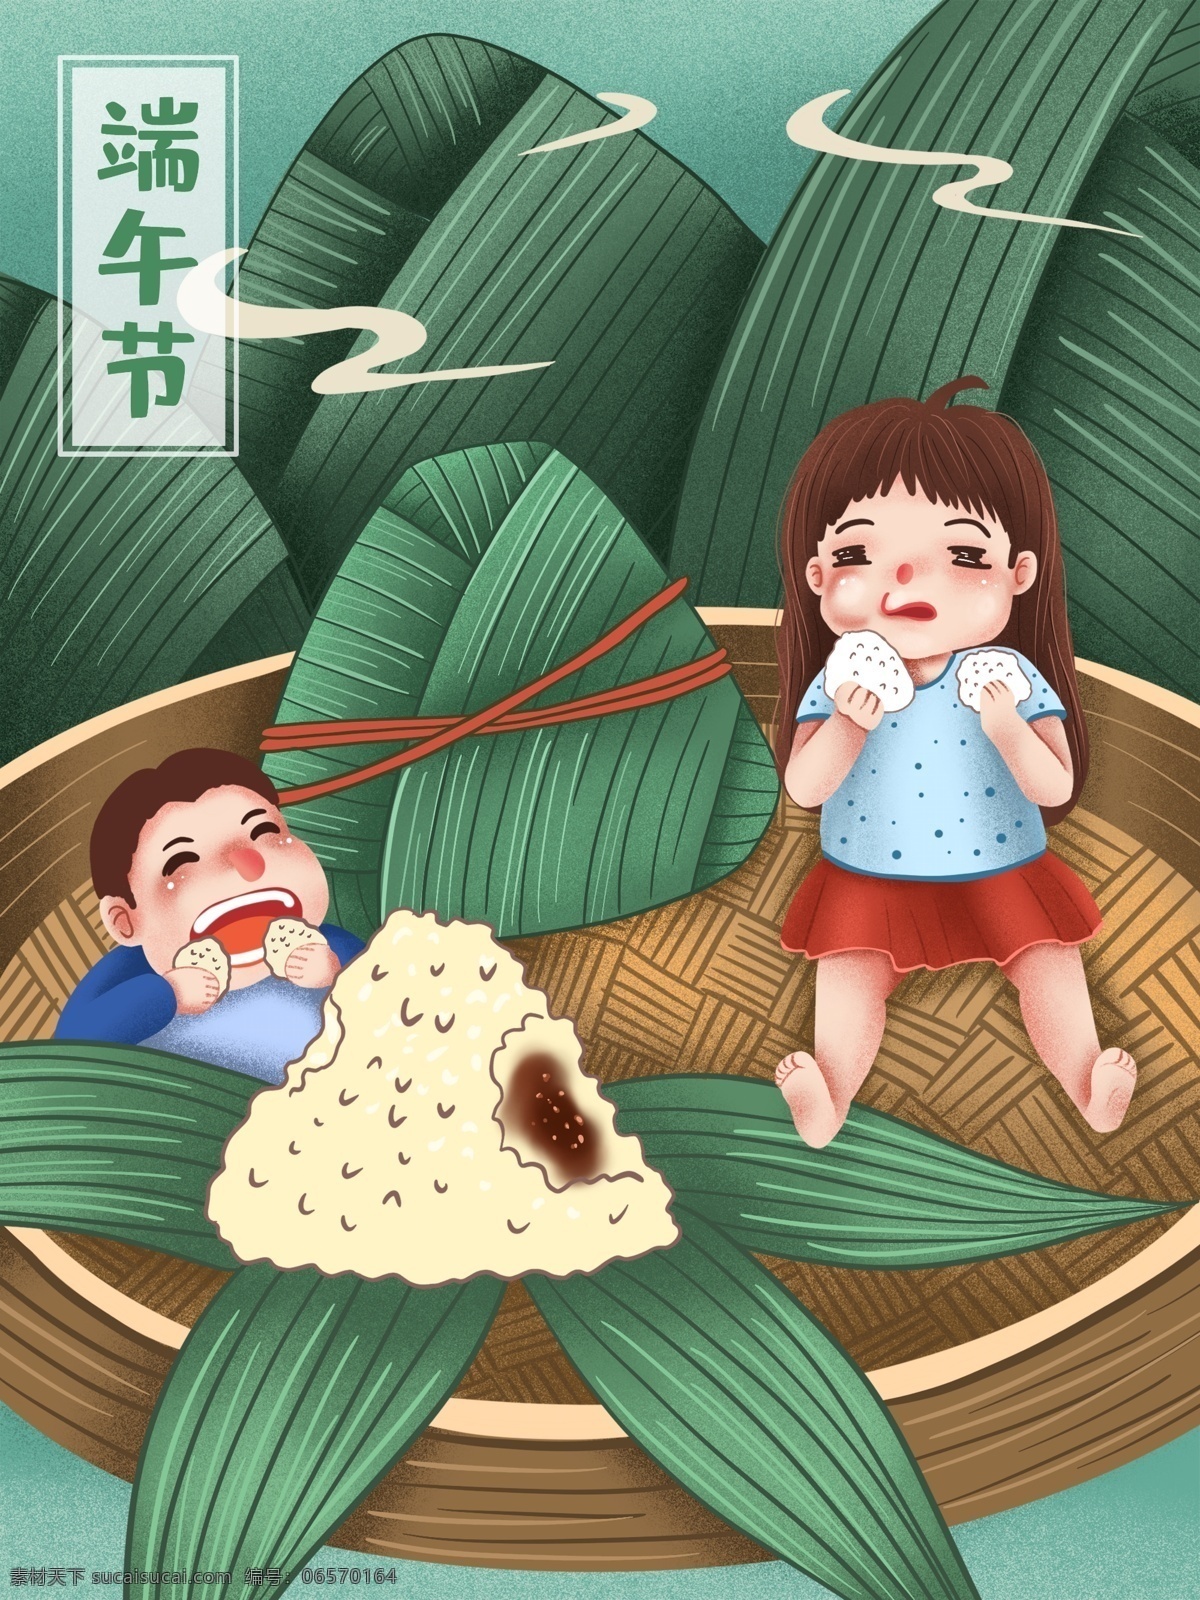 端午节 两个 小 胖子 吃 粽子 原创 插画 五月节 节日 女孩 男孩 吃东西 吃货